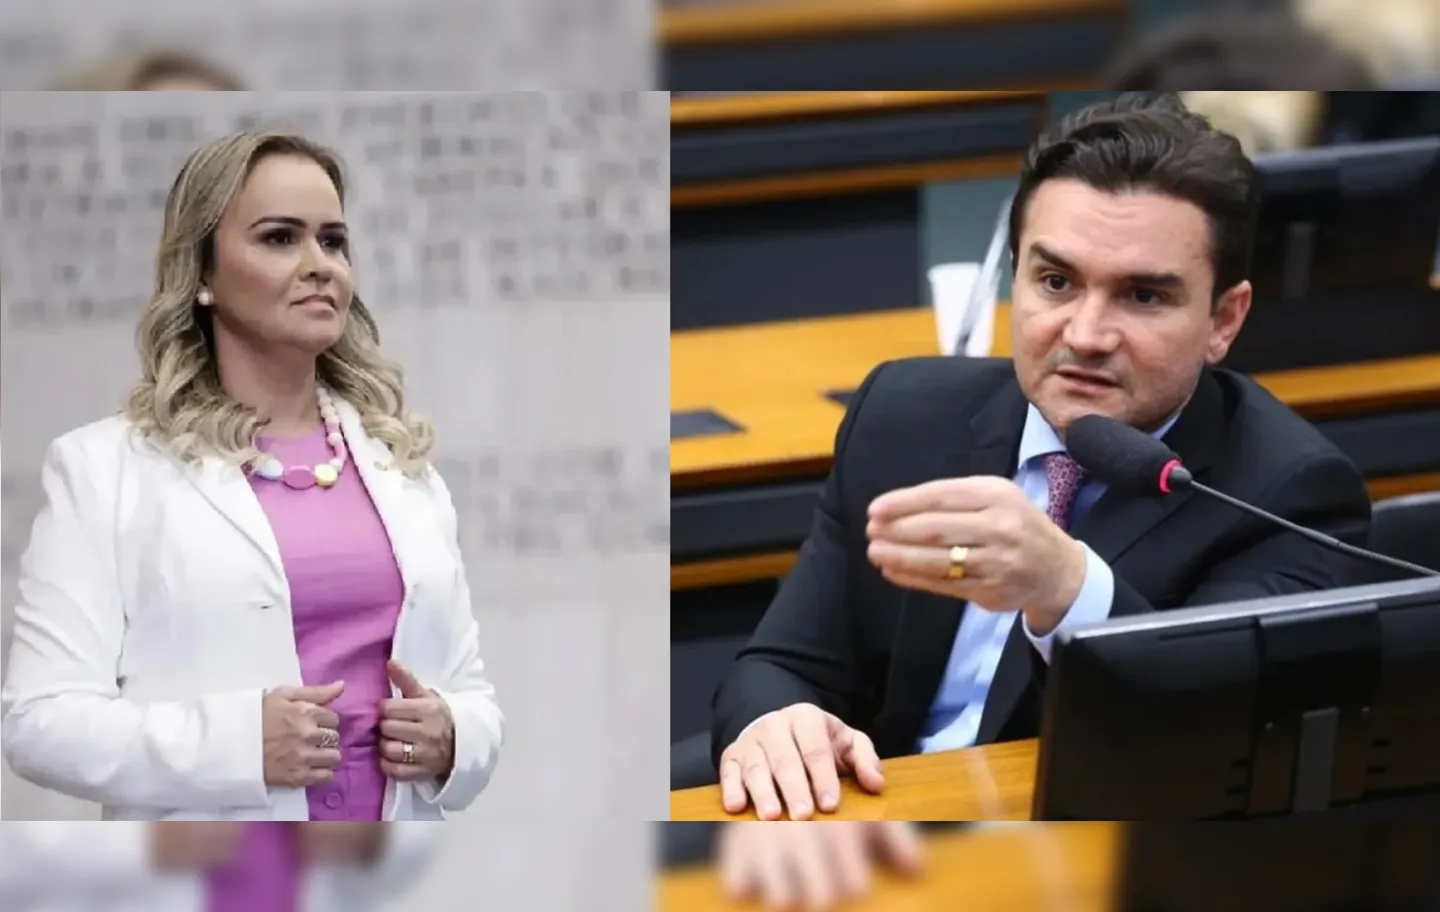 Daniela e Sabino foram eleitos deputados federais pelo União Brasil, mas por partidos diferentes